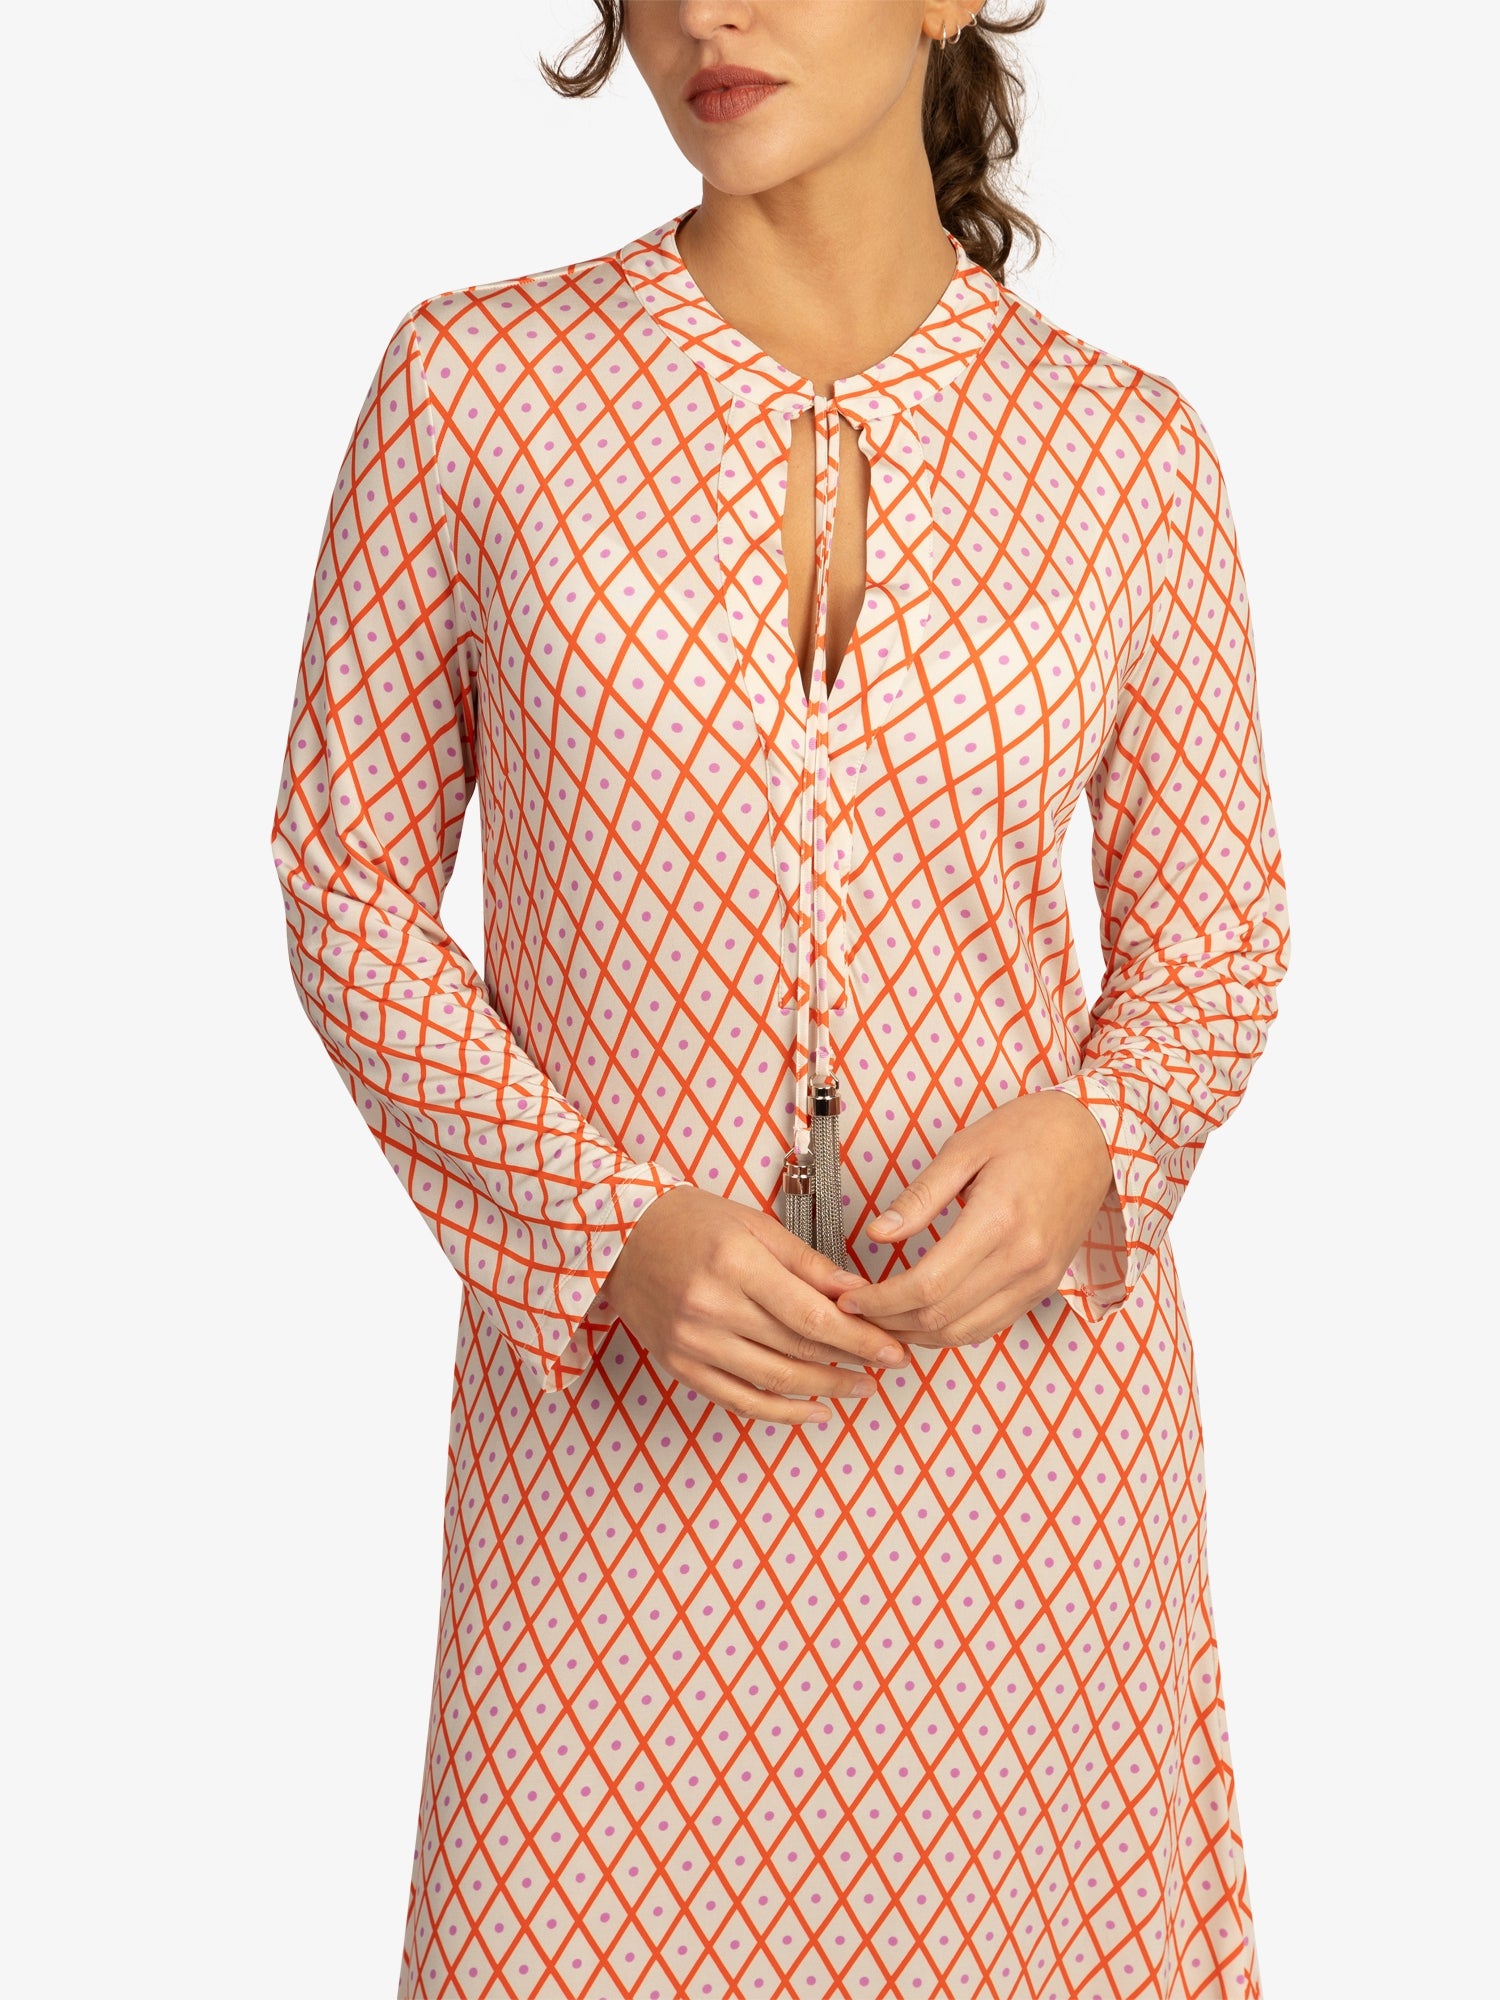 Mint & Mia Sommer Kleid aus hochwertigem Viskose Material mit Modisch Stil | korallenrot-multicolor